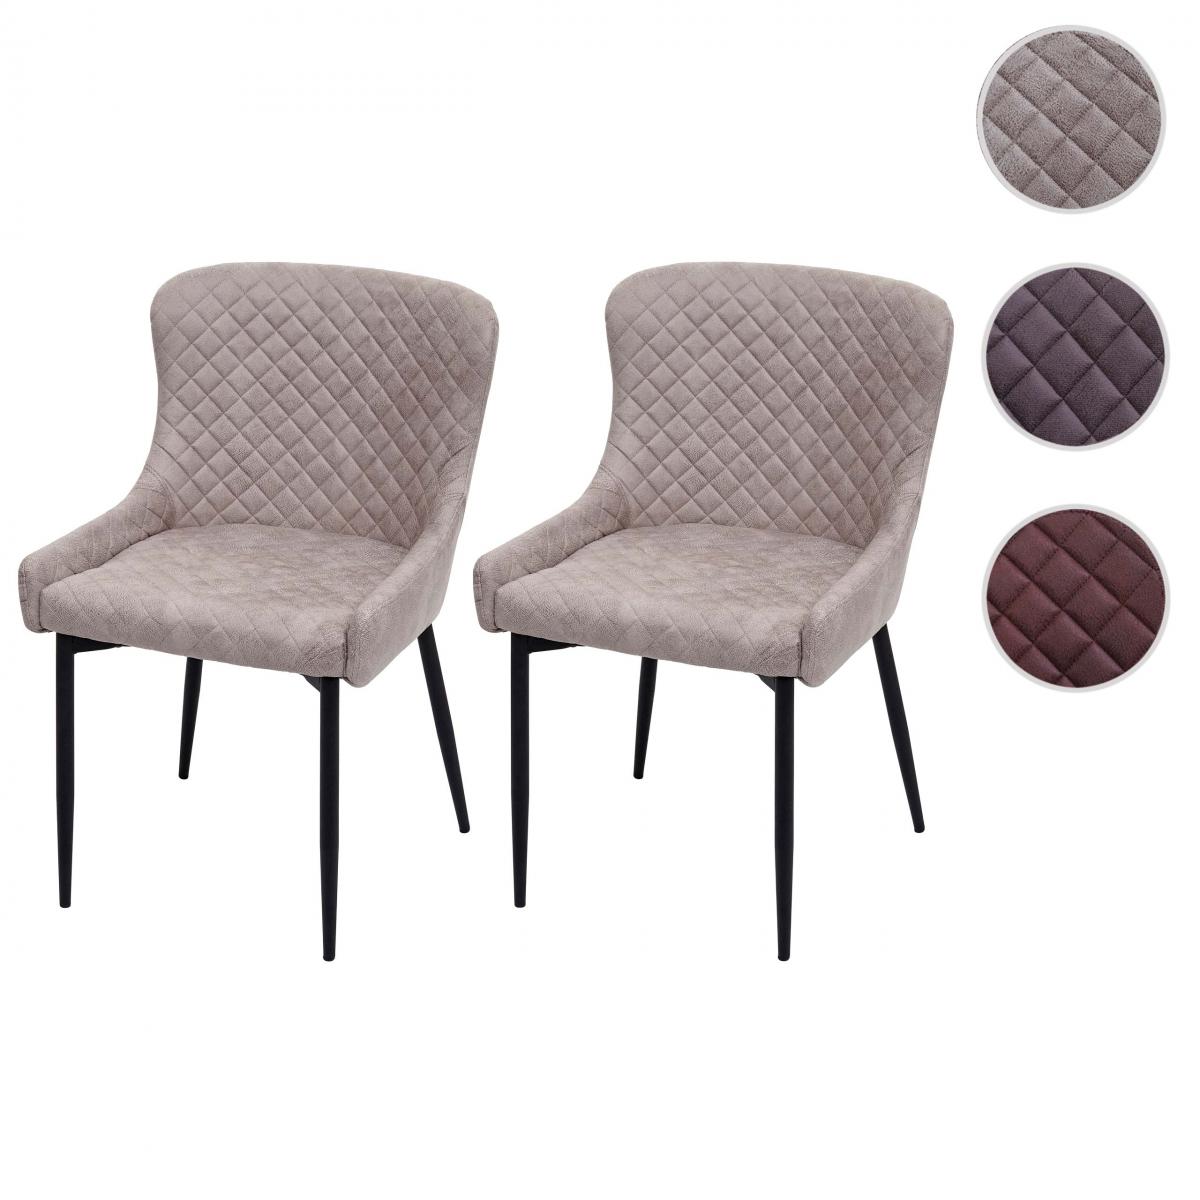 Mendler - 2x chaise de salle à manger HWC-H79, chaise de cuisine, fauteuil, métal, vintage ~ tissu / textile gris - Chaises